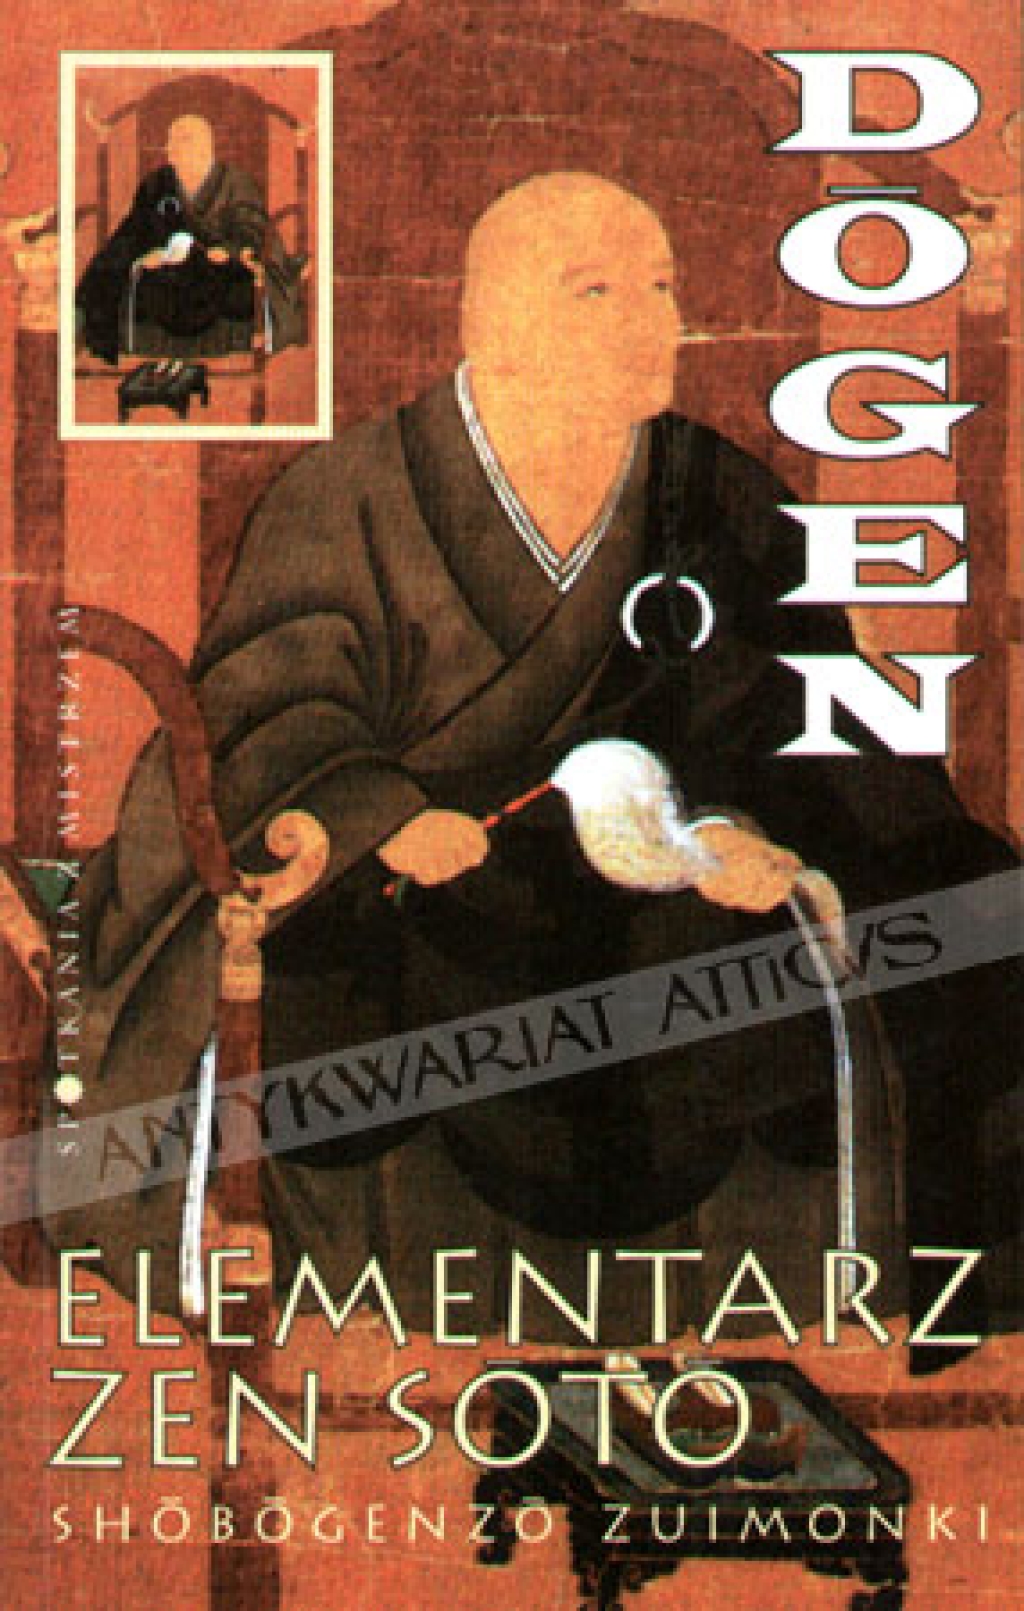 Elementarz zen soto. Shobogenzo Zuimonki